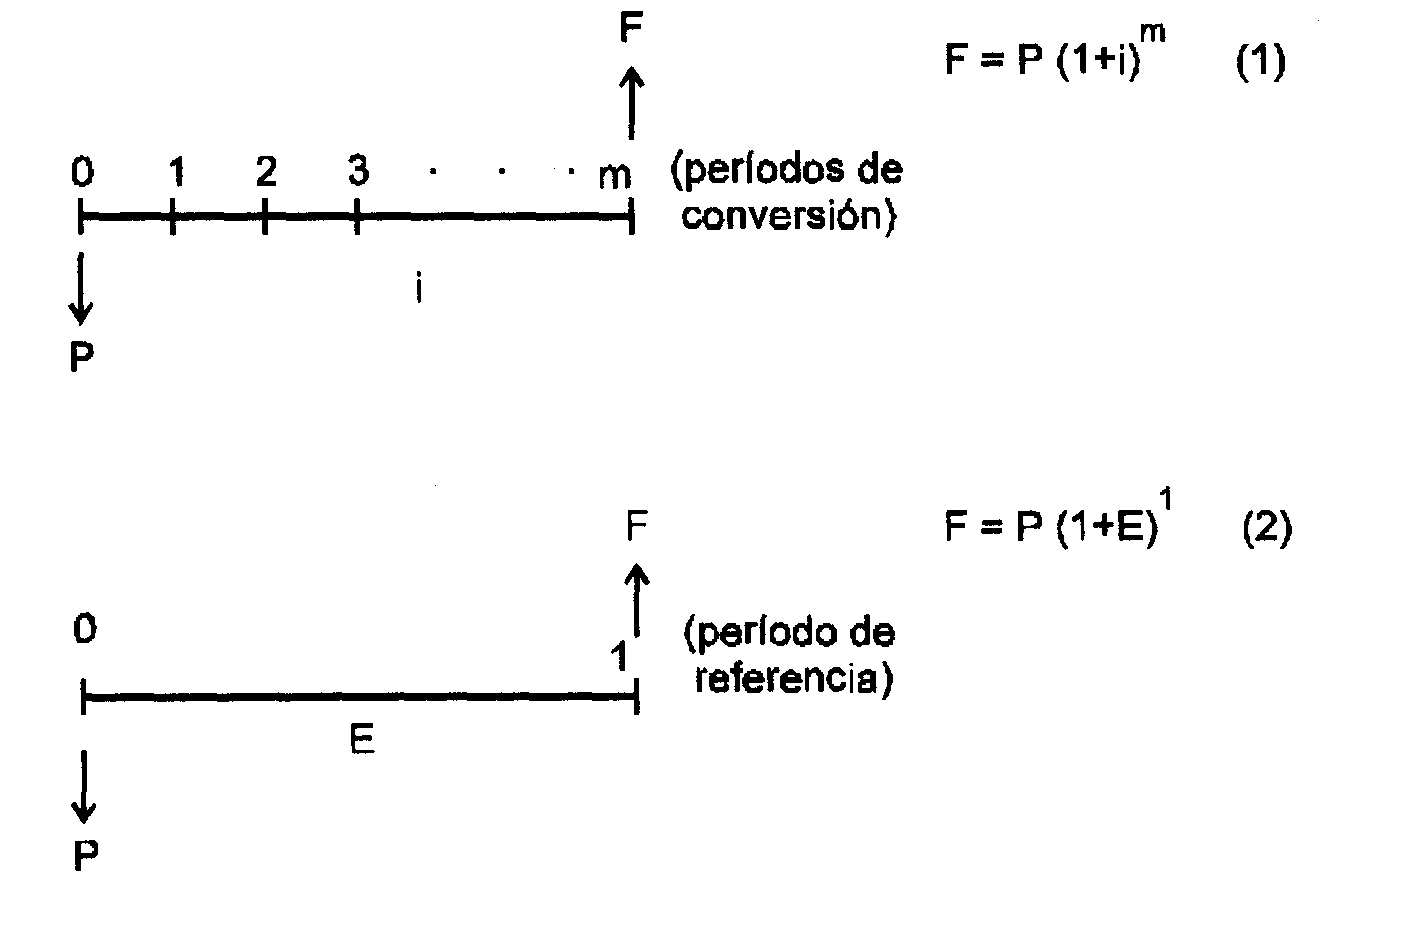 Figura 3.2: Grafica períodos de conversión y de referencia Solución 3.6. La información suministrada es una tasa nominal, a partir de la cual se puede conocer la tasa periódica semestral.